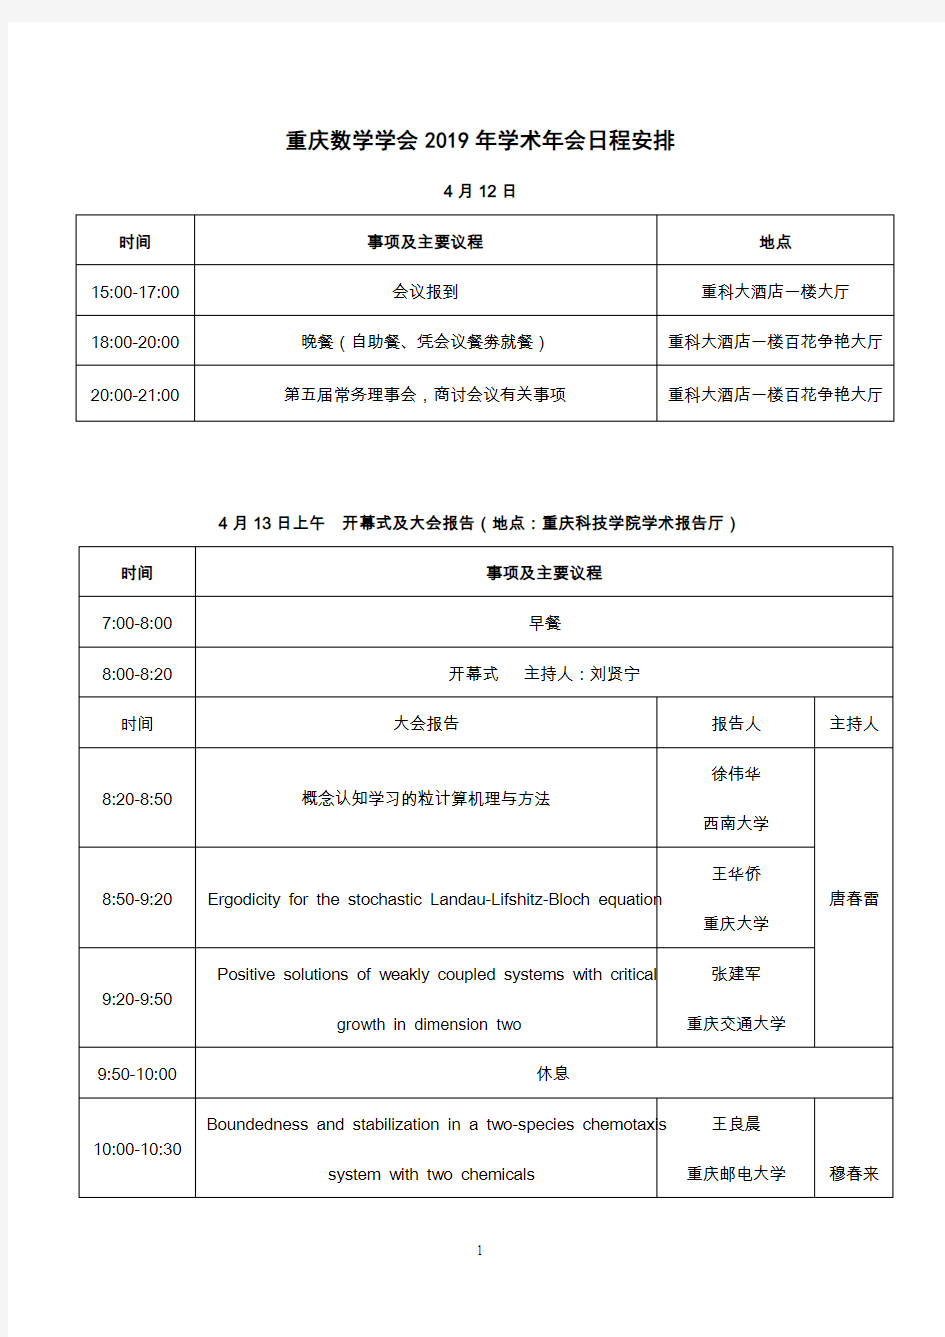 重庆数学学会2019年学术年会会议手册